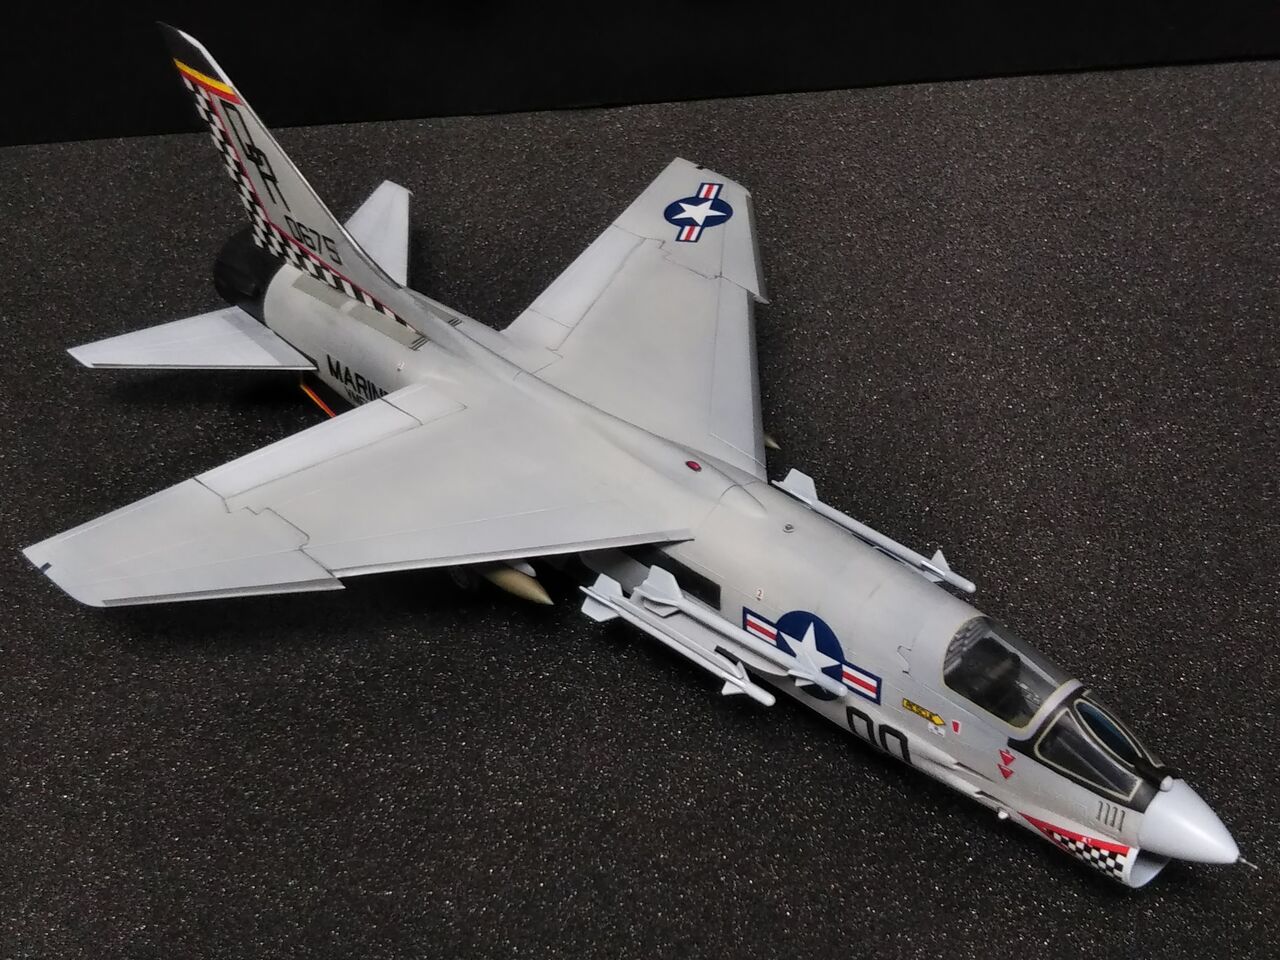 ハセガワ 1/72 アメリカ海兵隊 戦闘機 F-8E 「クルーセイダー」チェッカーボーズ : 常磐重工 -JOBAN JUKO PROJECT-  楽しきかな模型の世界